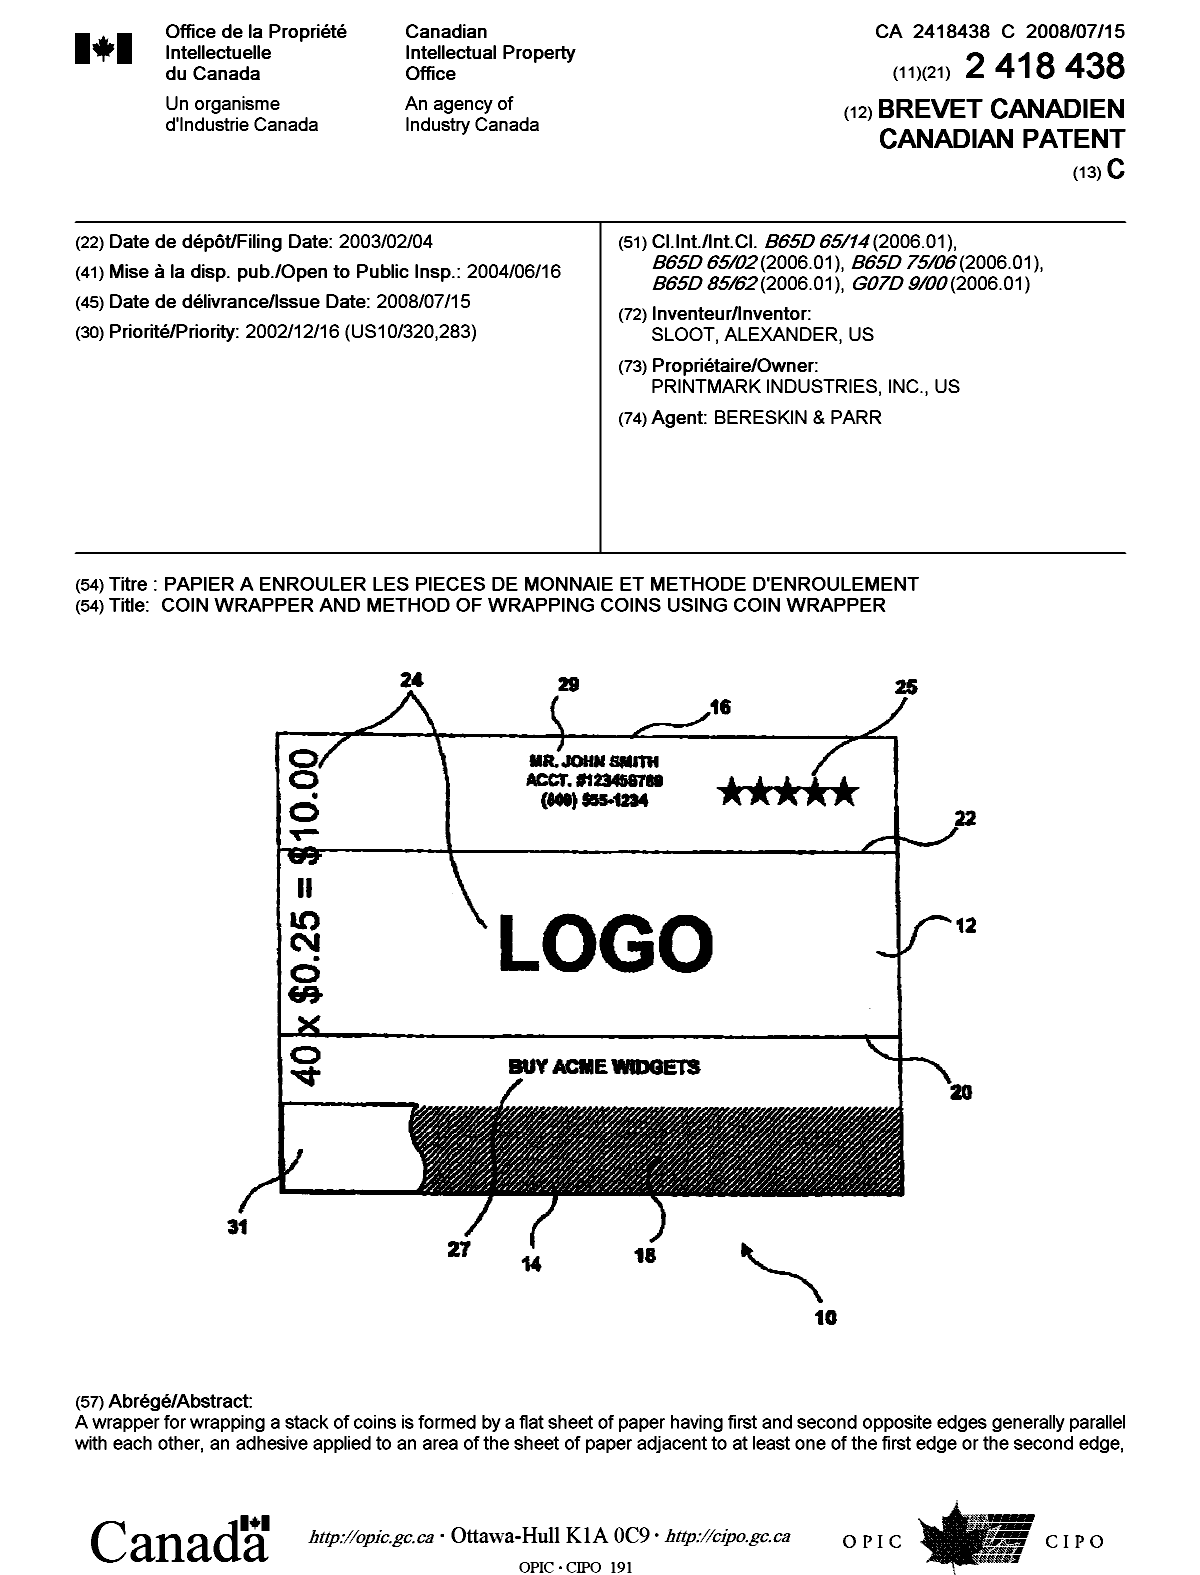 Document de brevet canadien 2418438. Page couverture 20080617. Image 1 de 2